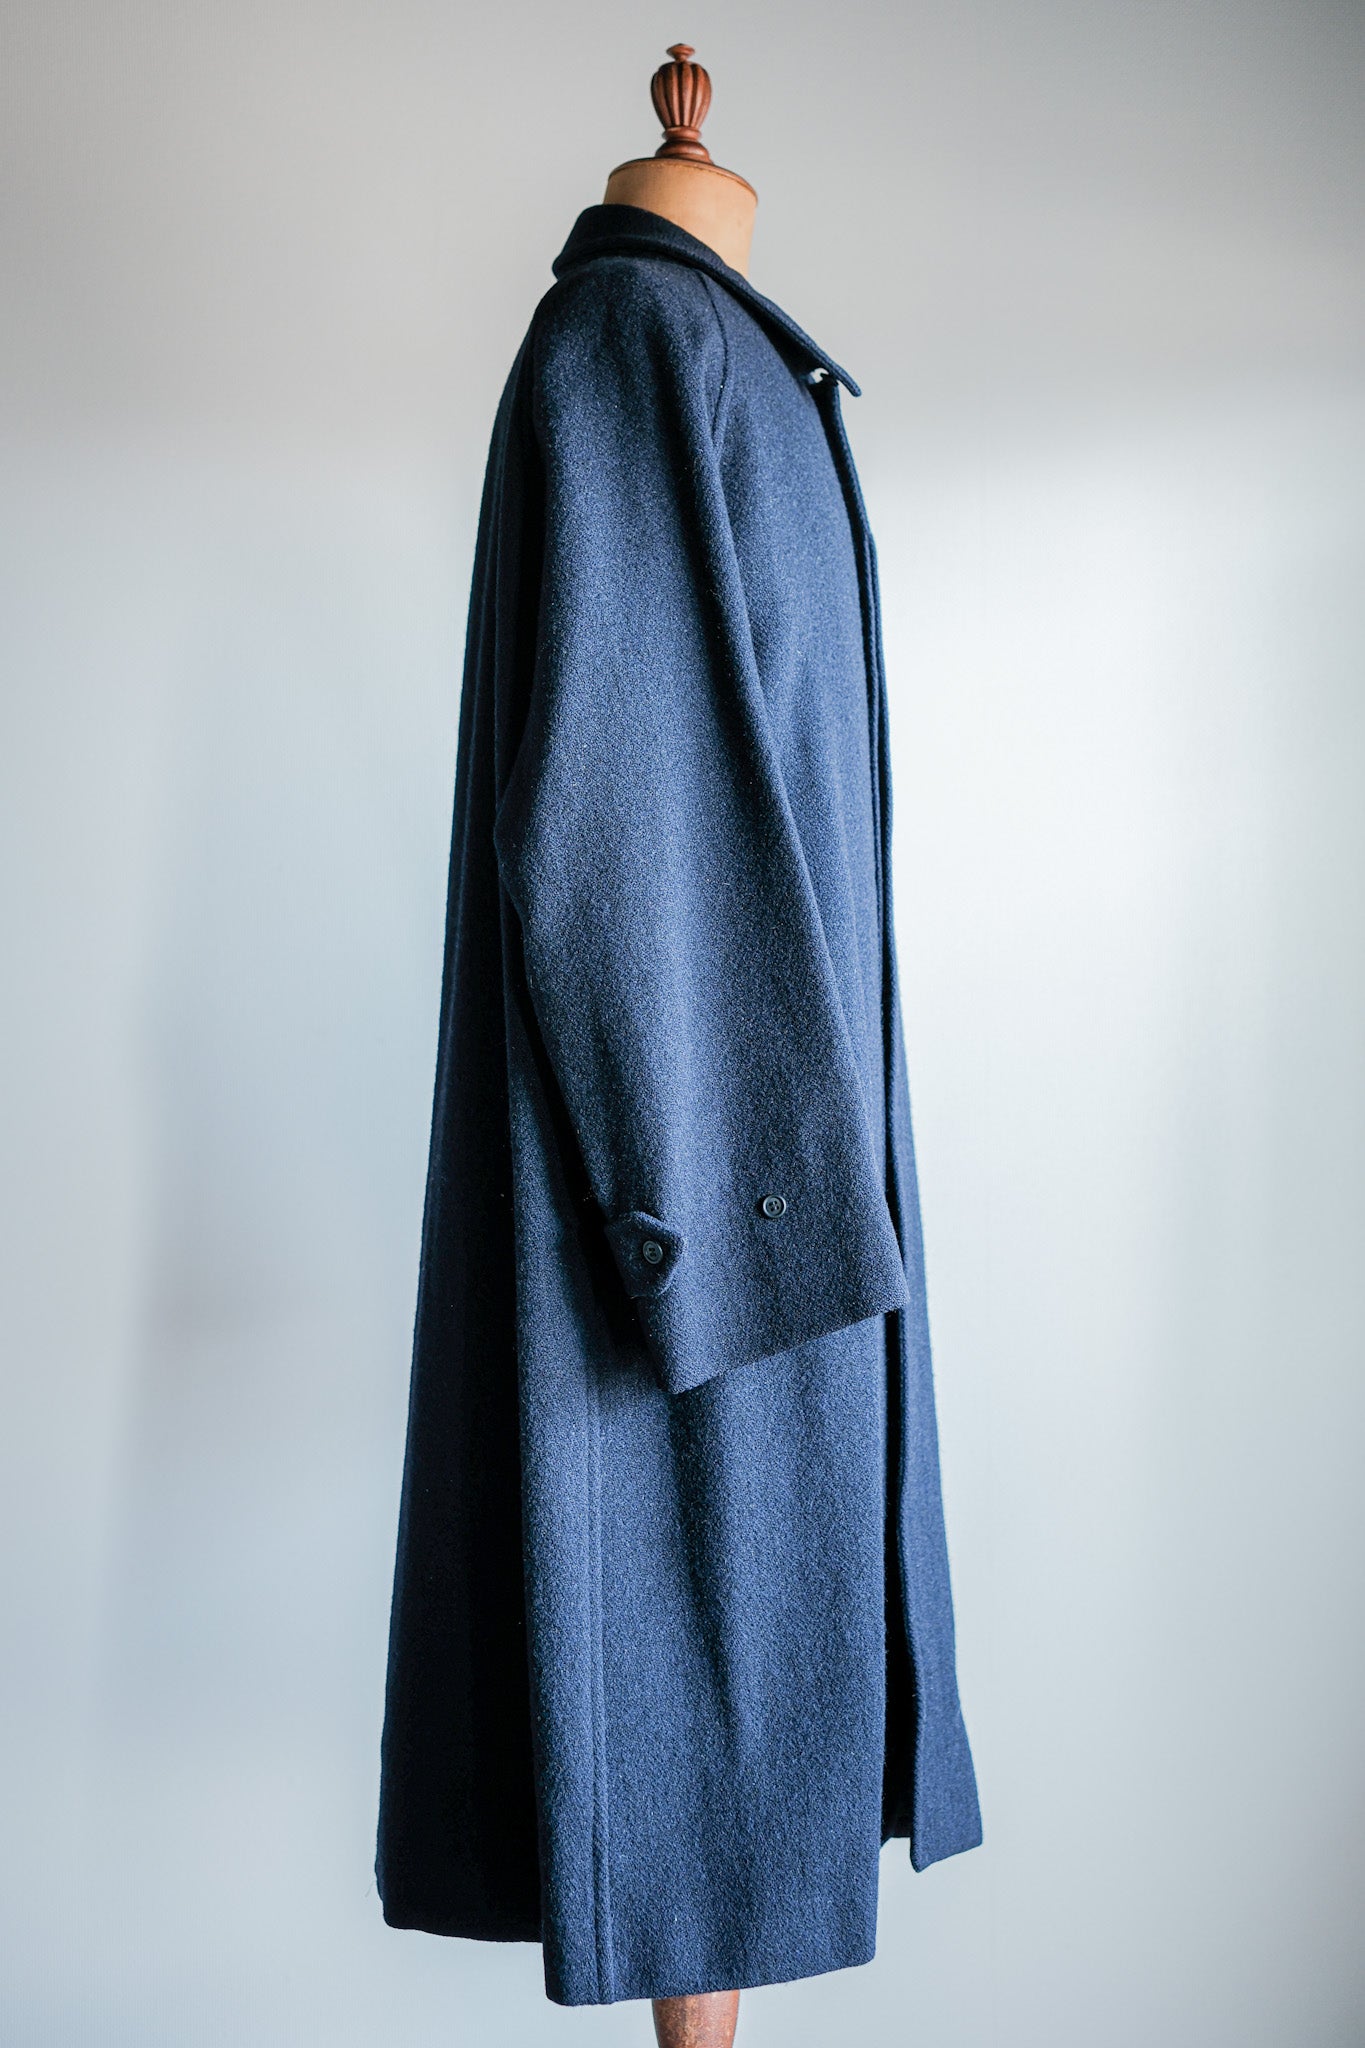 [~ 80 년대] 빈티지 버버리 싱글 라글란 울 발라 카안 코트 크기.